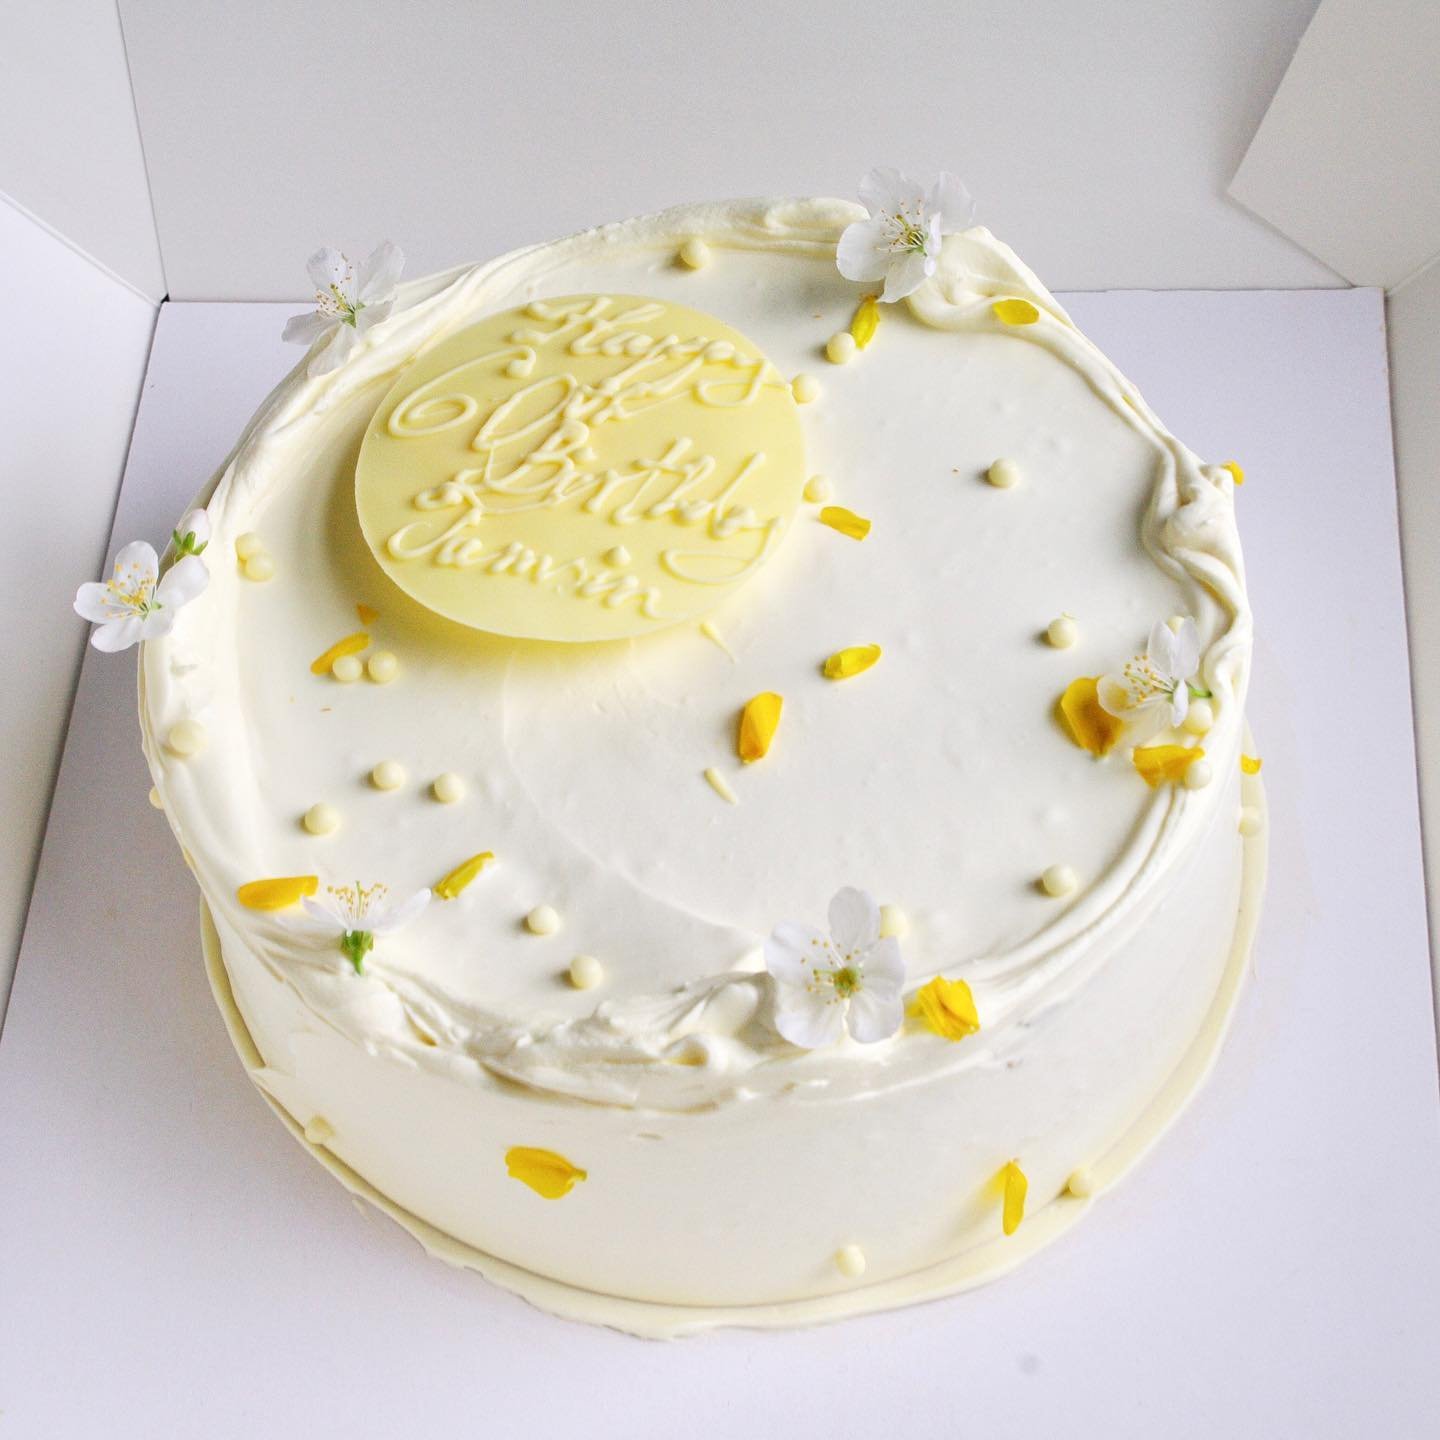 🎂 

#birthdaycake #yorkcakes #seasonalflowers #freshcreamcake #whitechoclatewhippedcream #shutishuti #whitecake